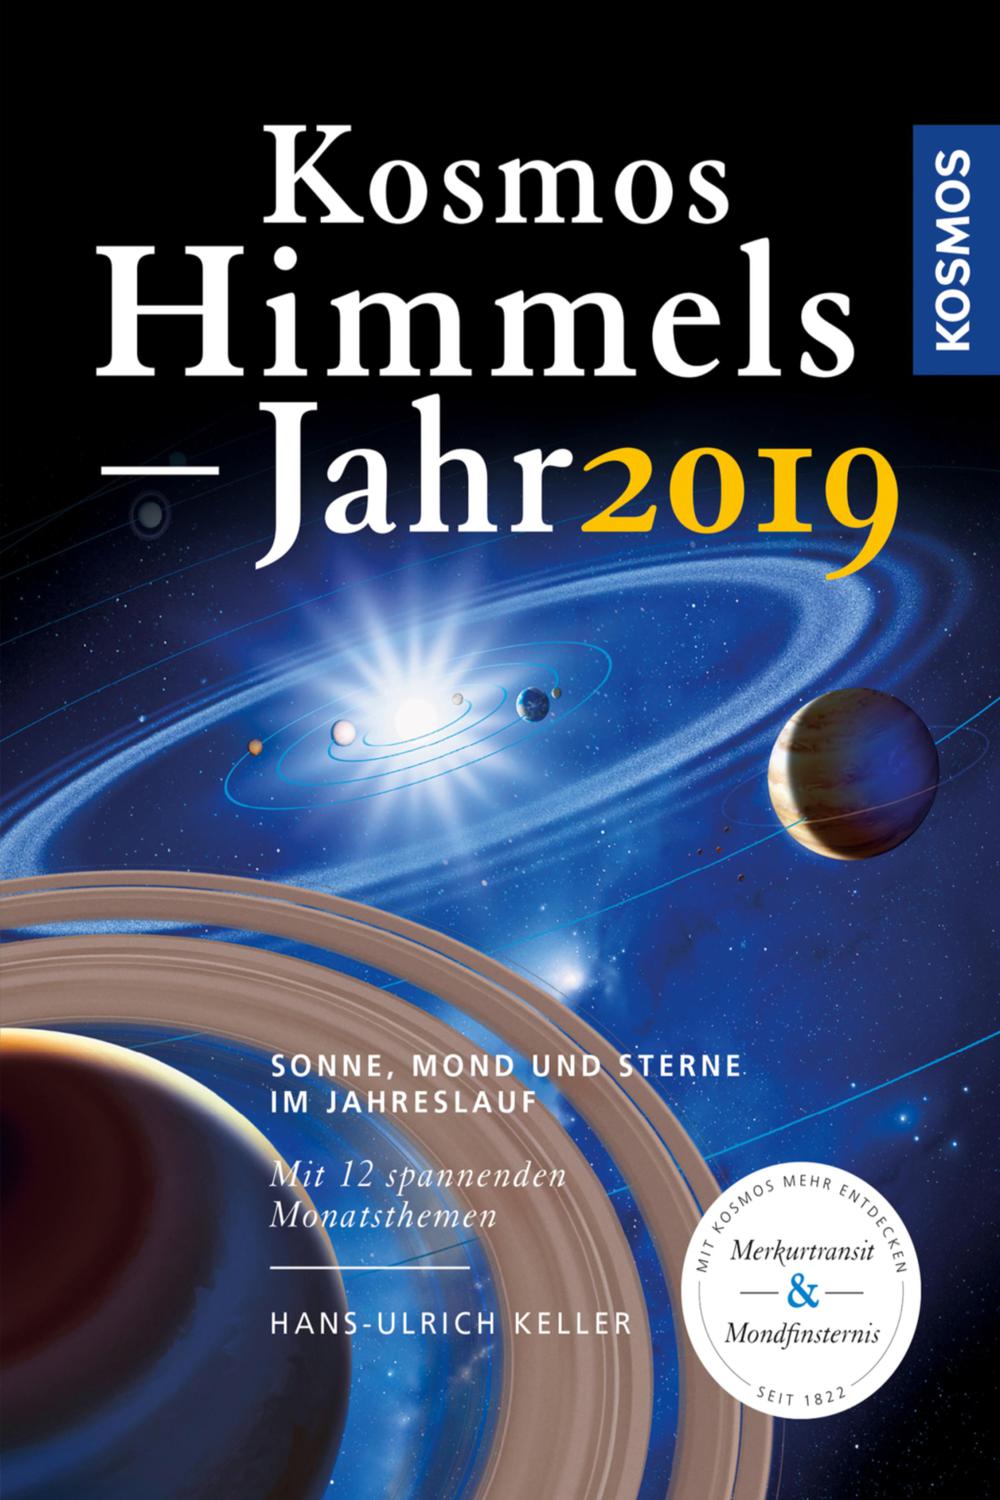 Kosmos Himmelsjahr 2019 - Hans-Ulrich Keller